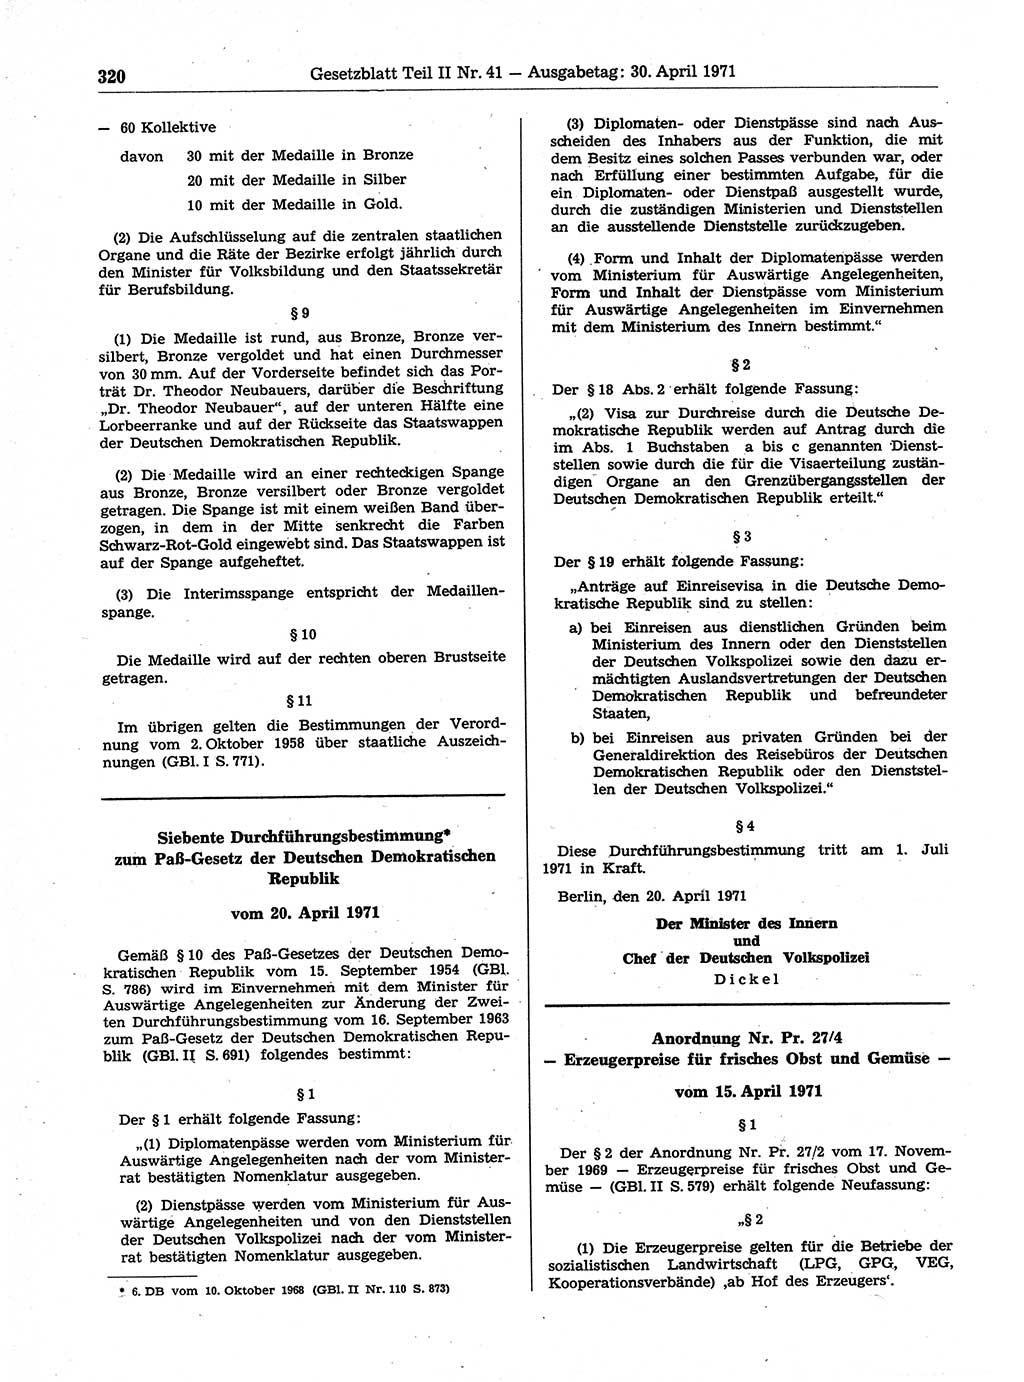 Gesetzblatt (GBl.) der Deutschen Demokratischen Republik (DDR) Teil ⅠⅠ 1971, Seite 320 (GBl. DDR ⅠⅠ 1971, S. 320)